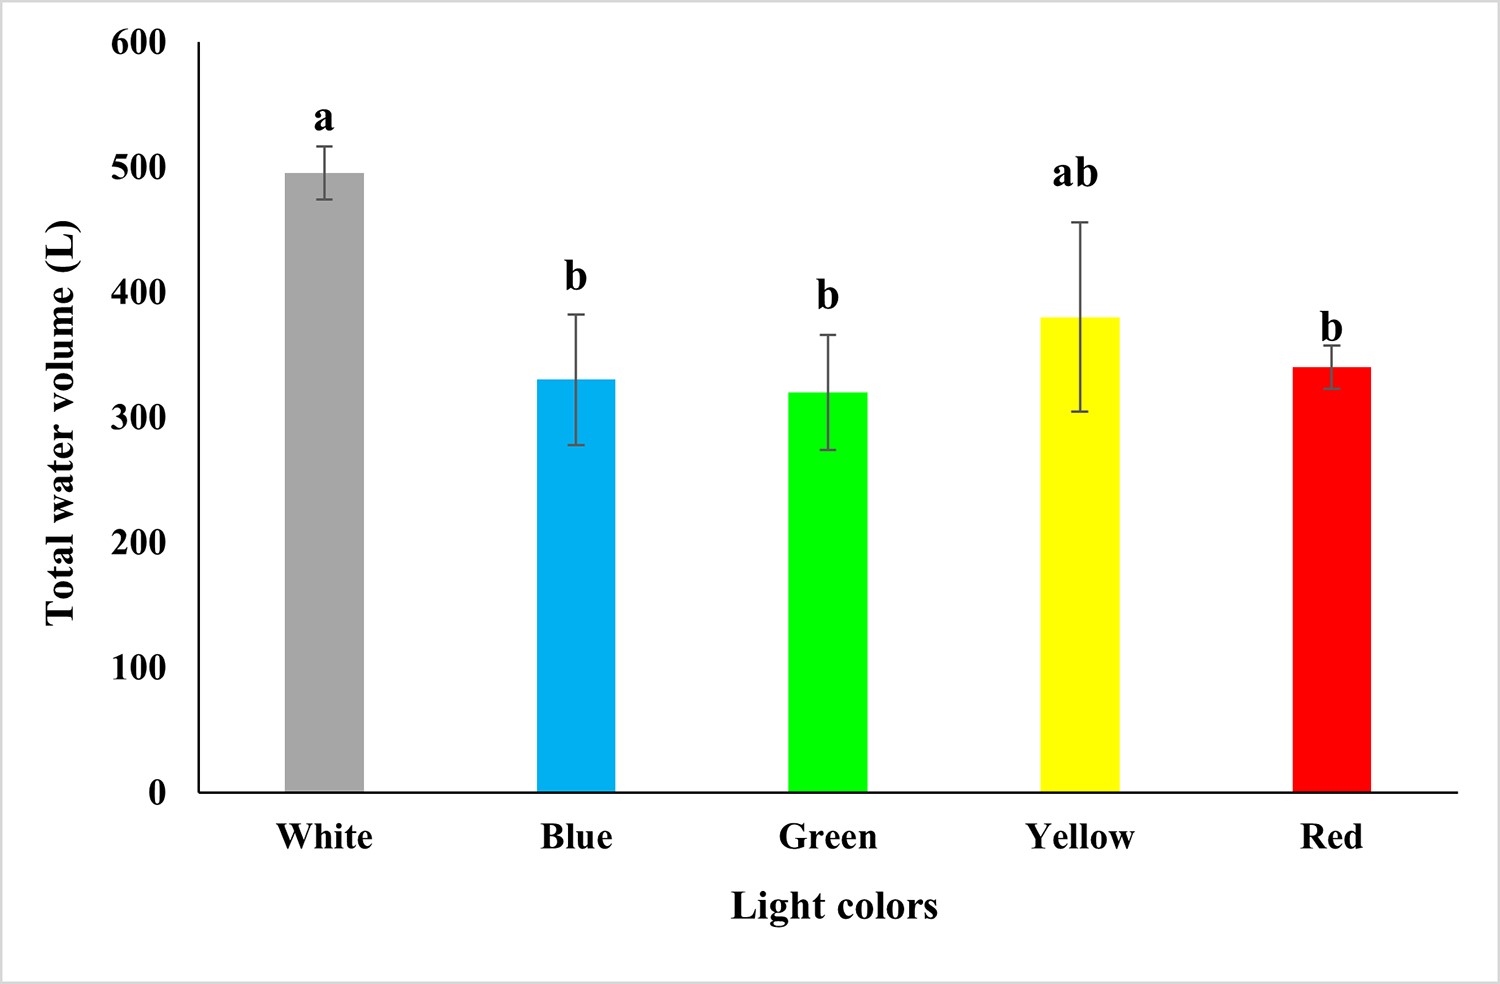 Giá trị trung bình (± SD) của tổng lượng nước (lít) trong các nghiệm trong các nghiệm thức với các ánh sáng đèn LED khác nhau